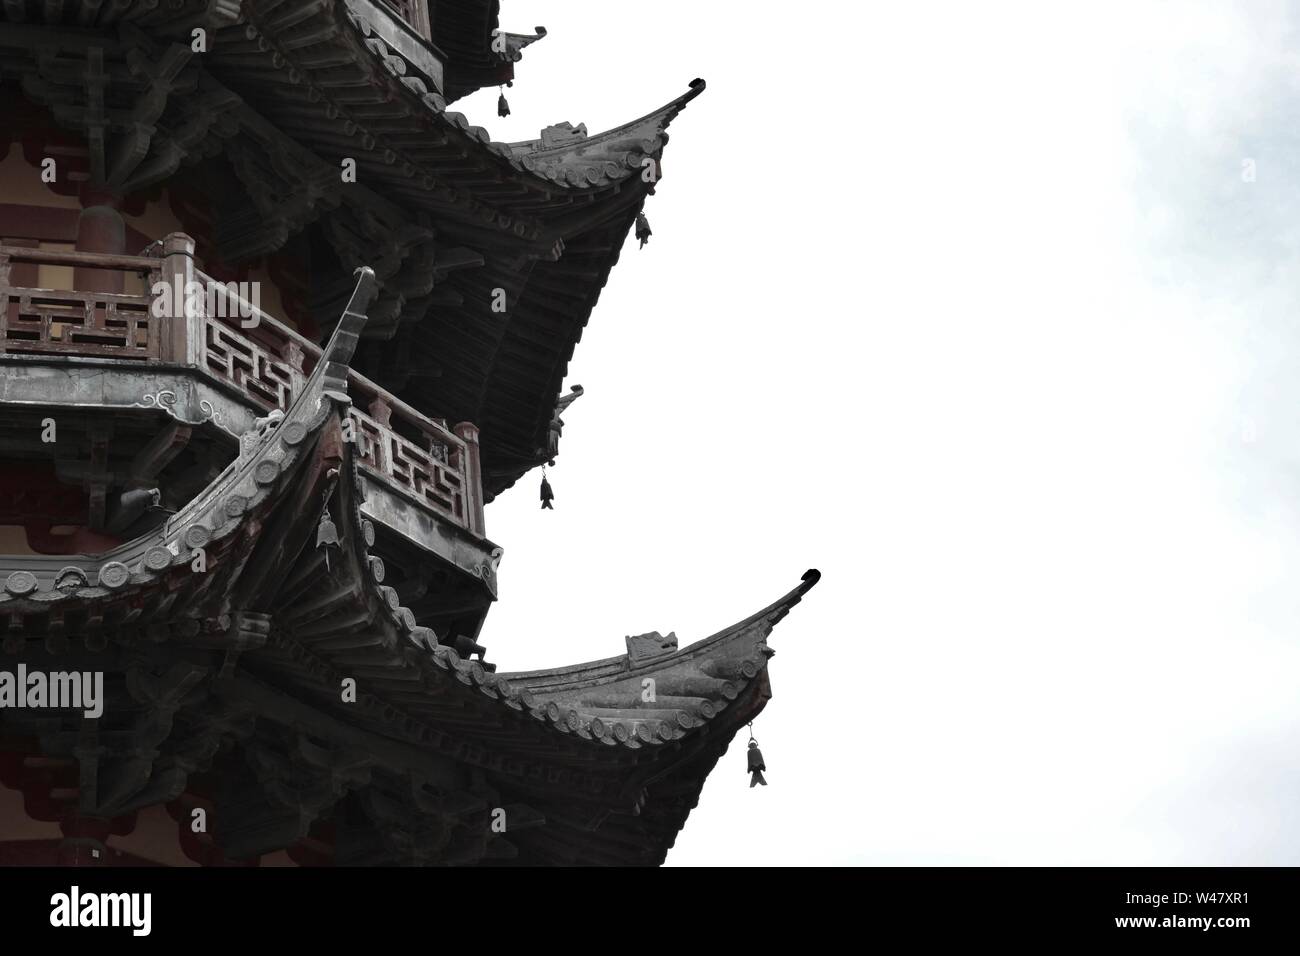 Profil d'un balcon et l'a fait en bois décoré, toits de pagode chinoise traditionnelle. Poisson modèle pendaison en silhouette. Banque D'Images